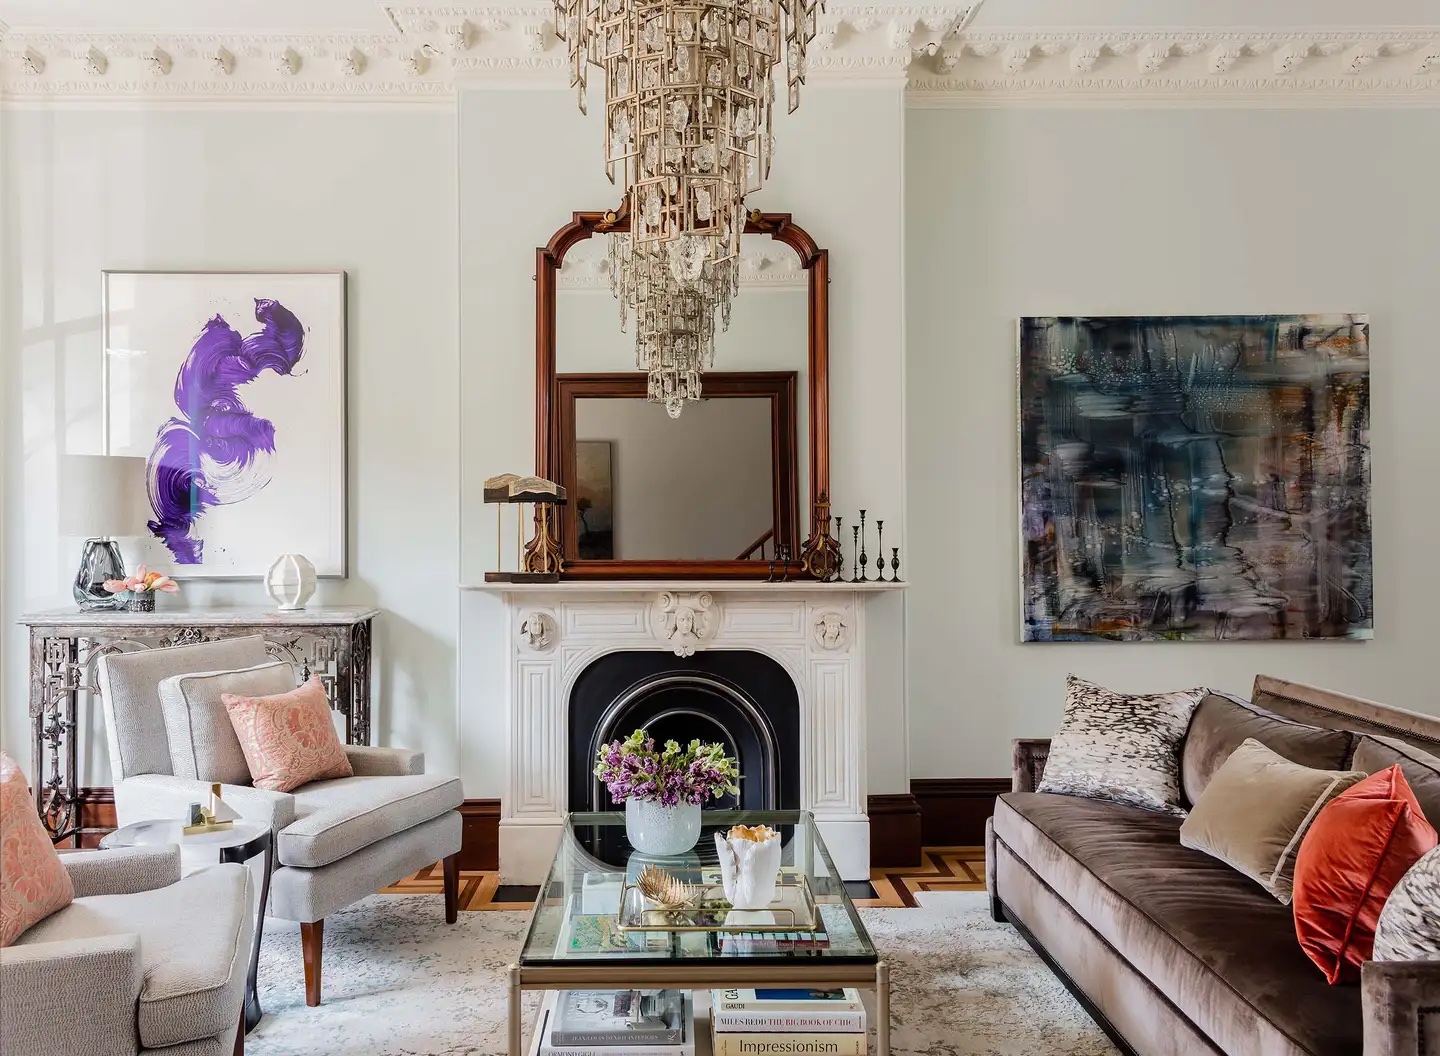 West Brookline living room designed by Elms Interior Design